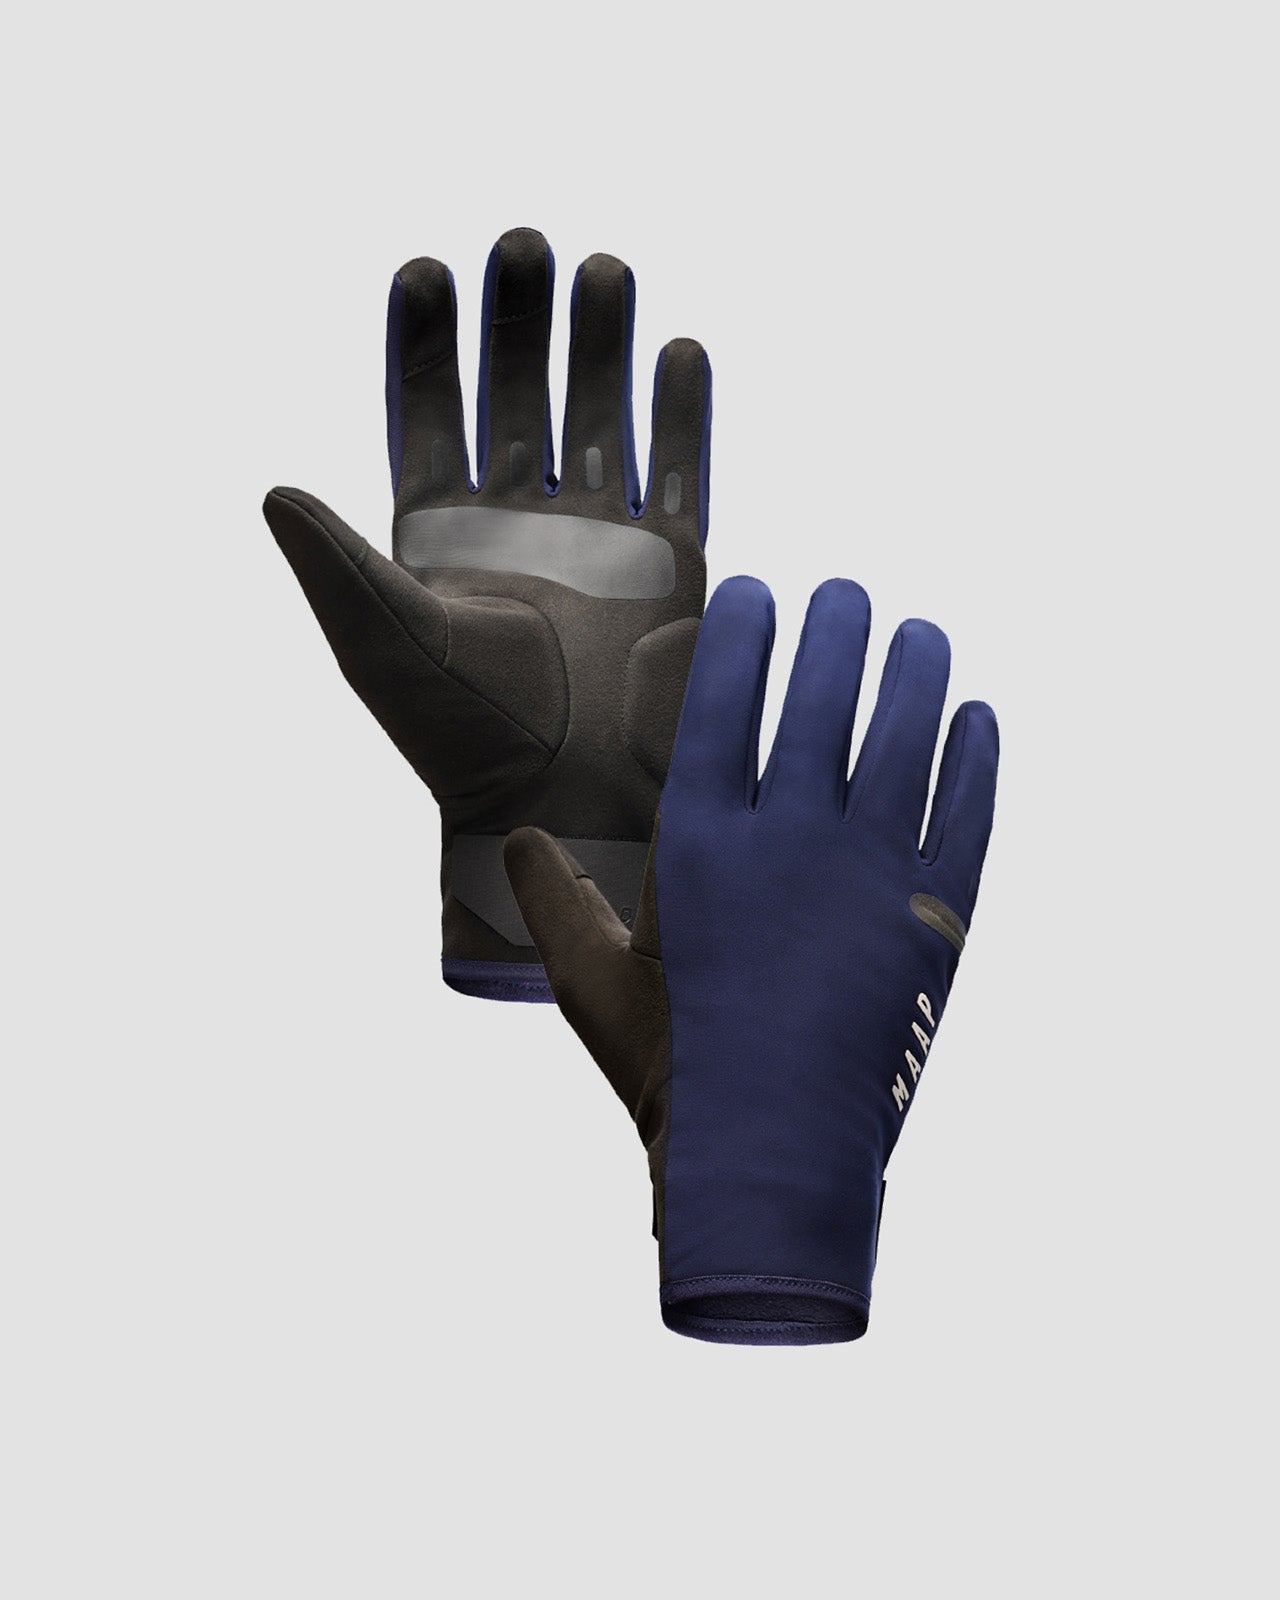 Winter Glove